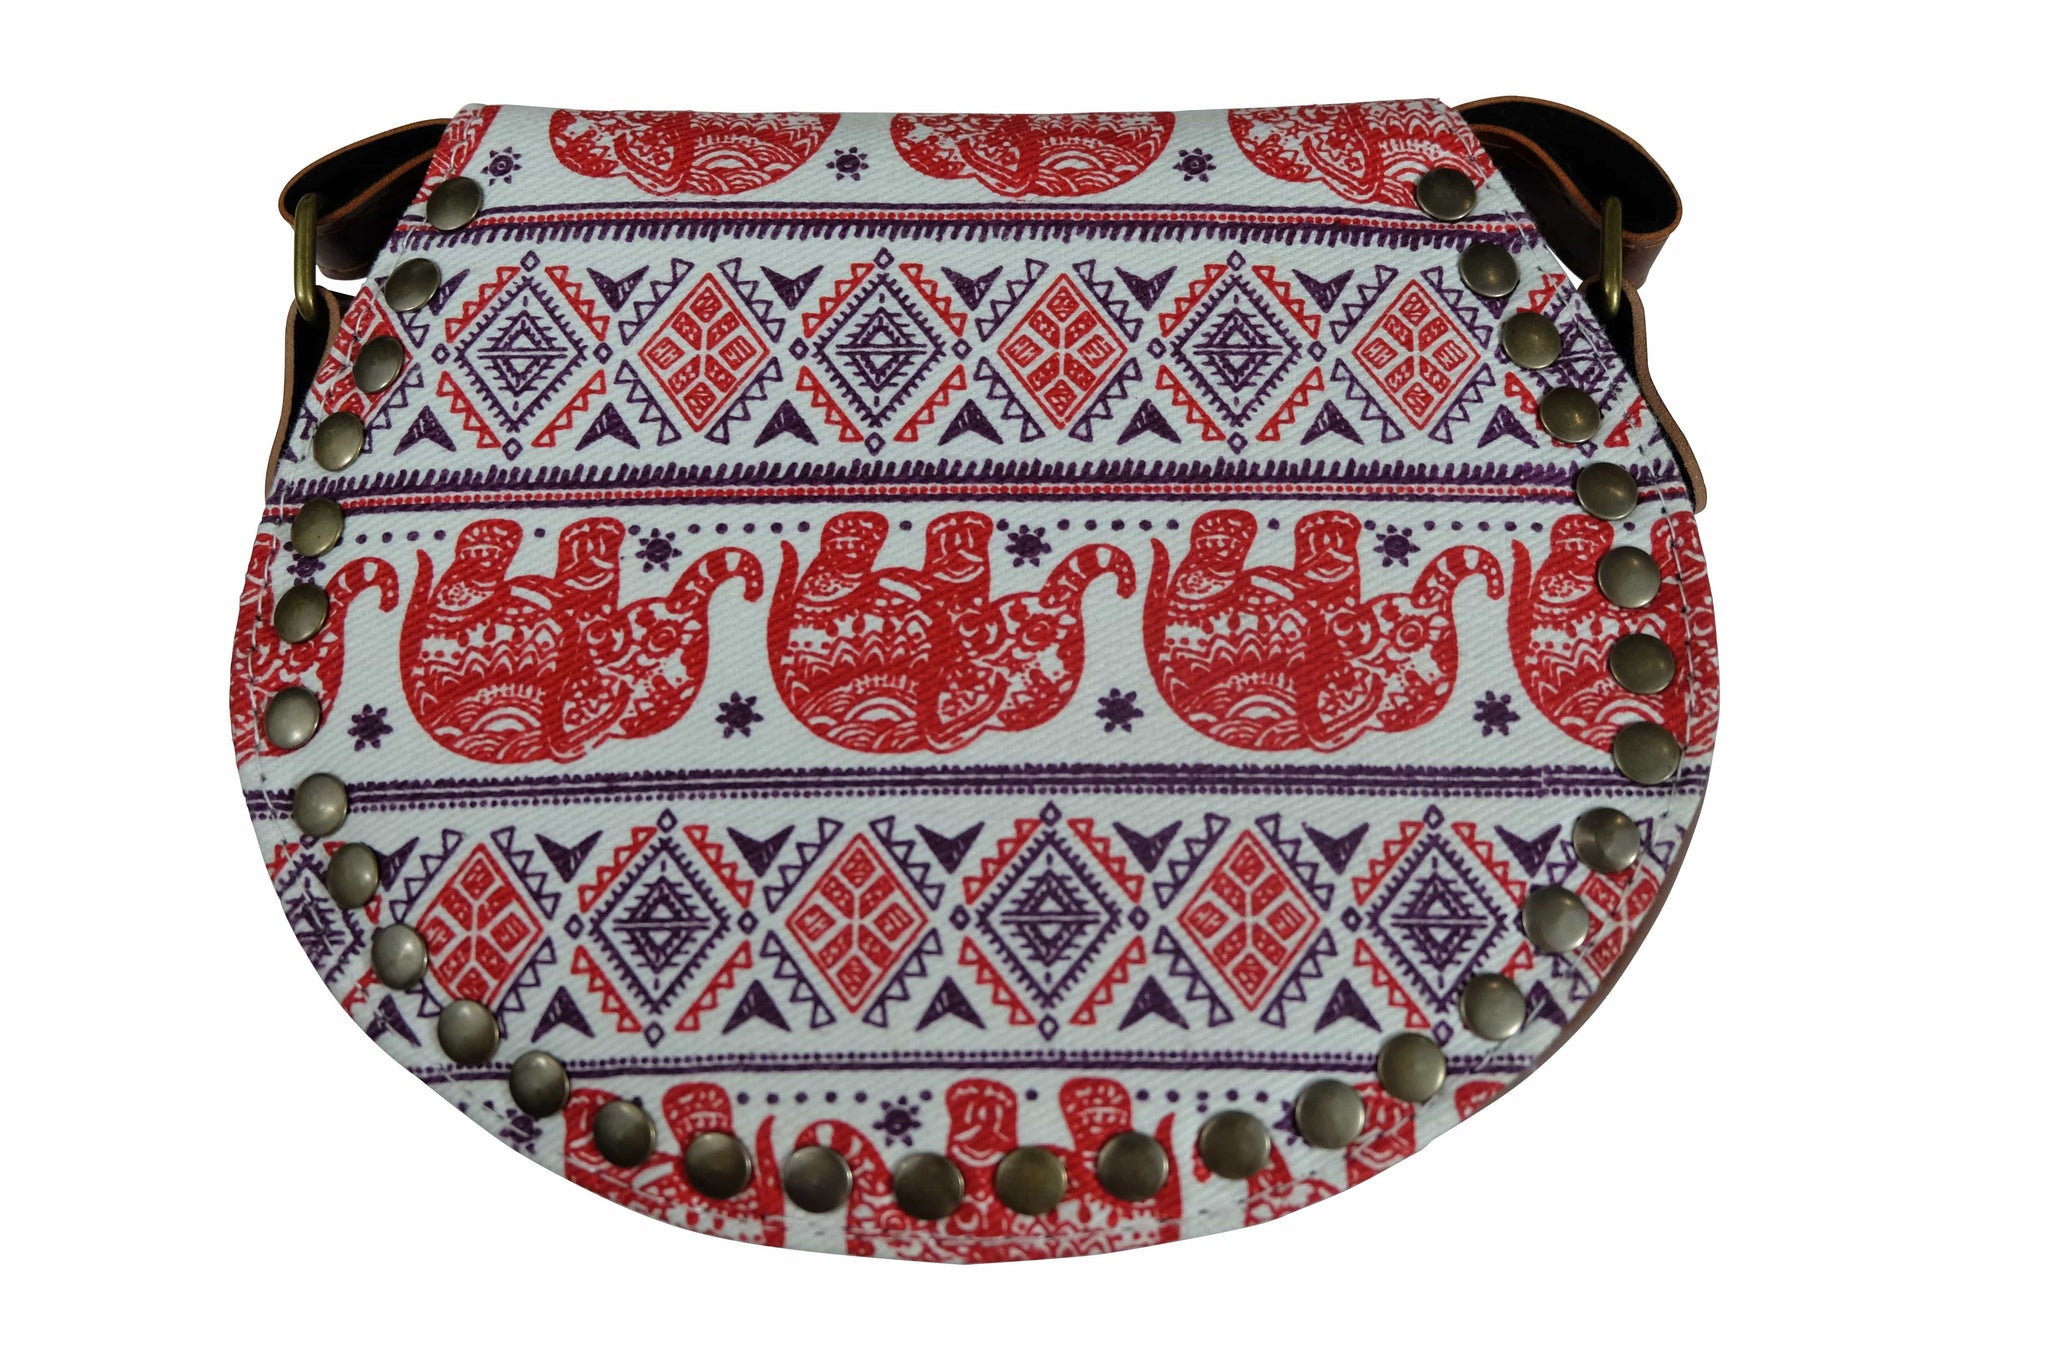 Stylish Side Bag for Women - Shop Now | VM Antique Decor